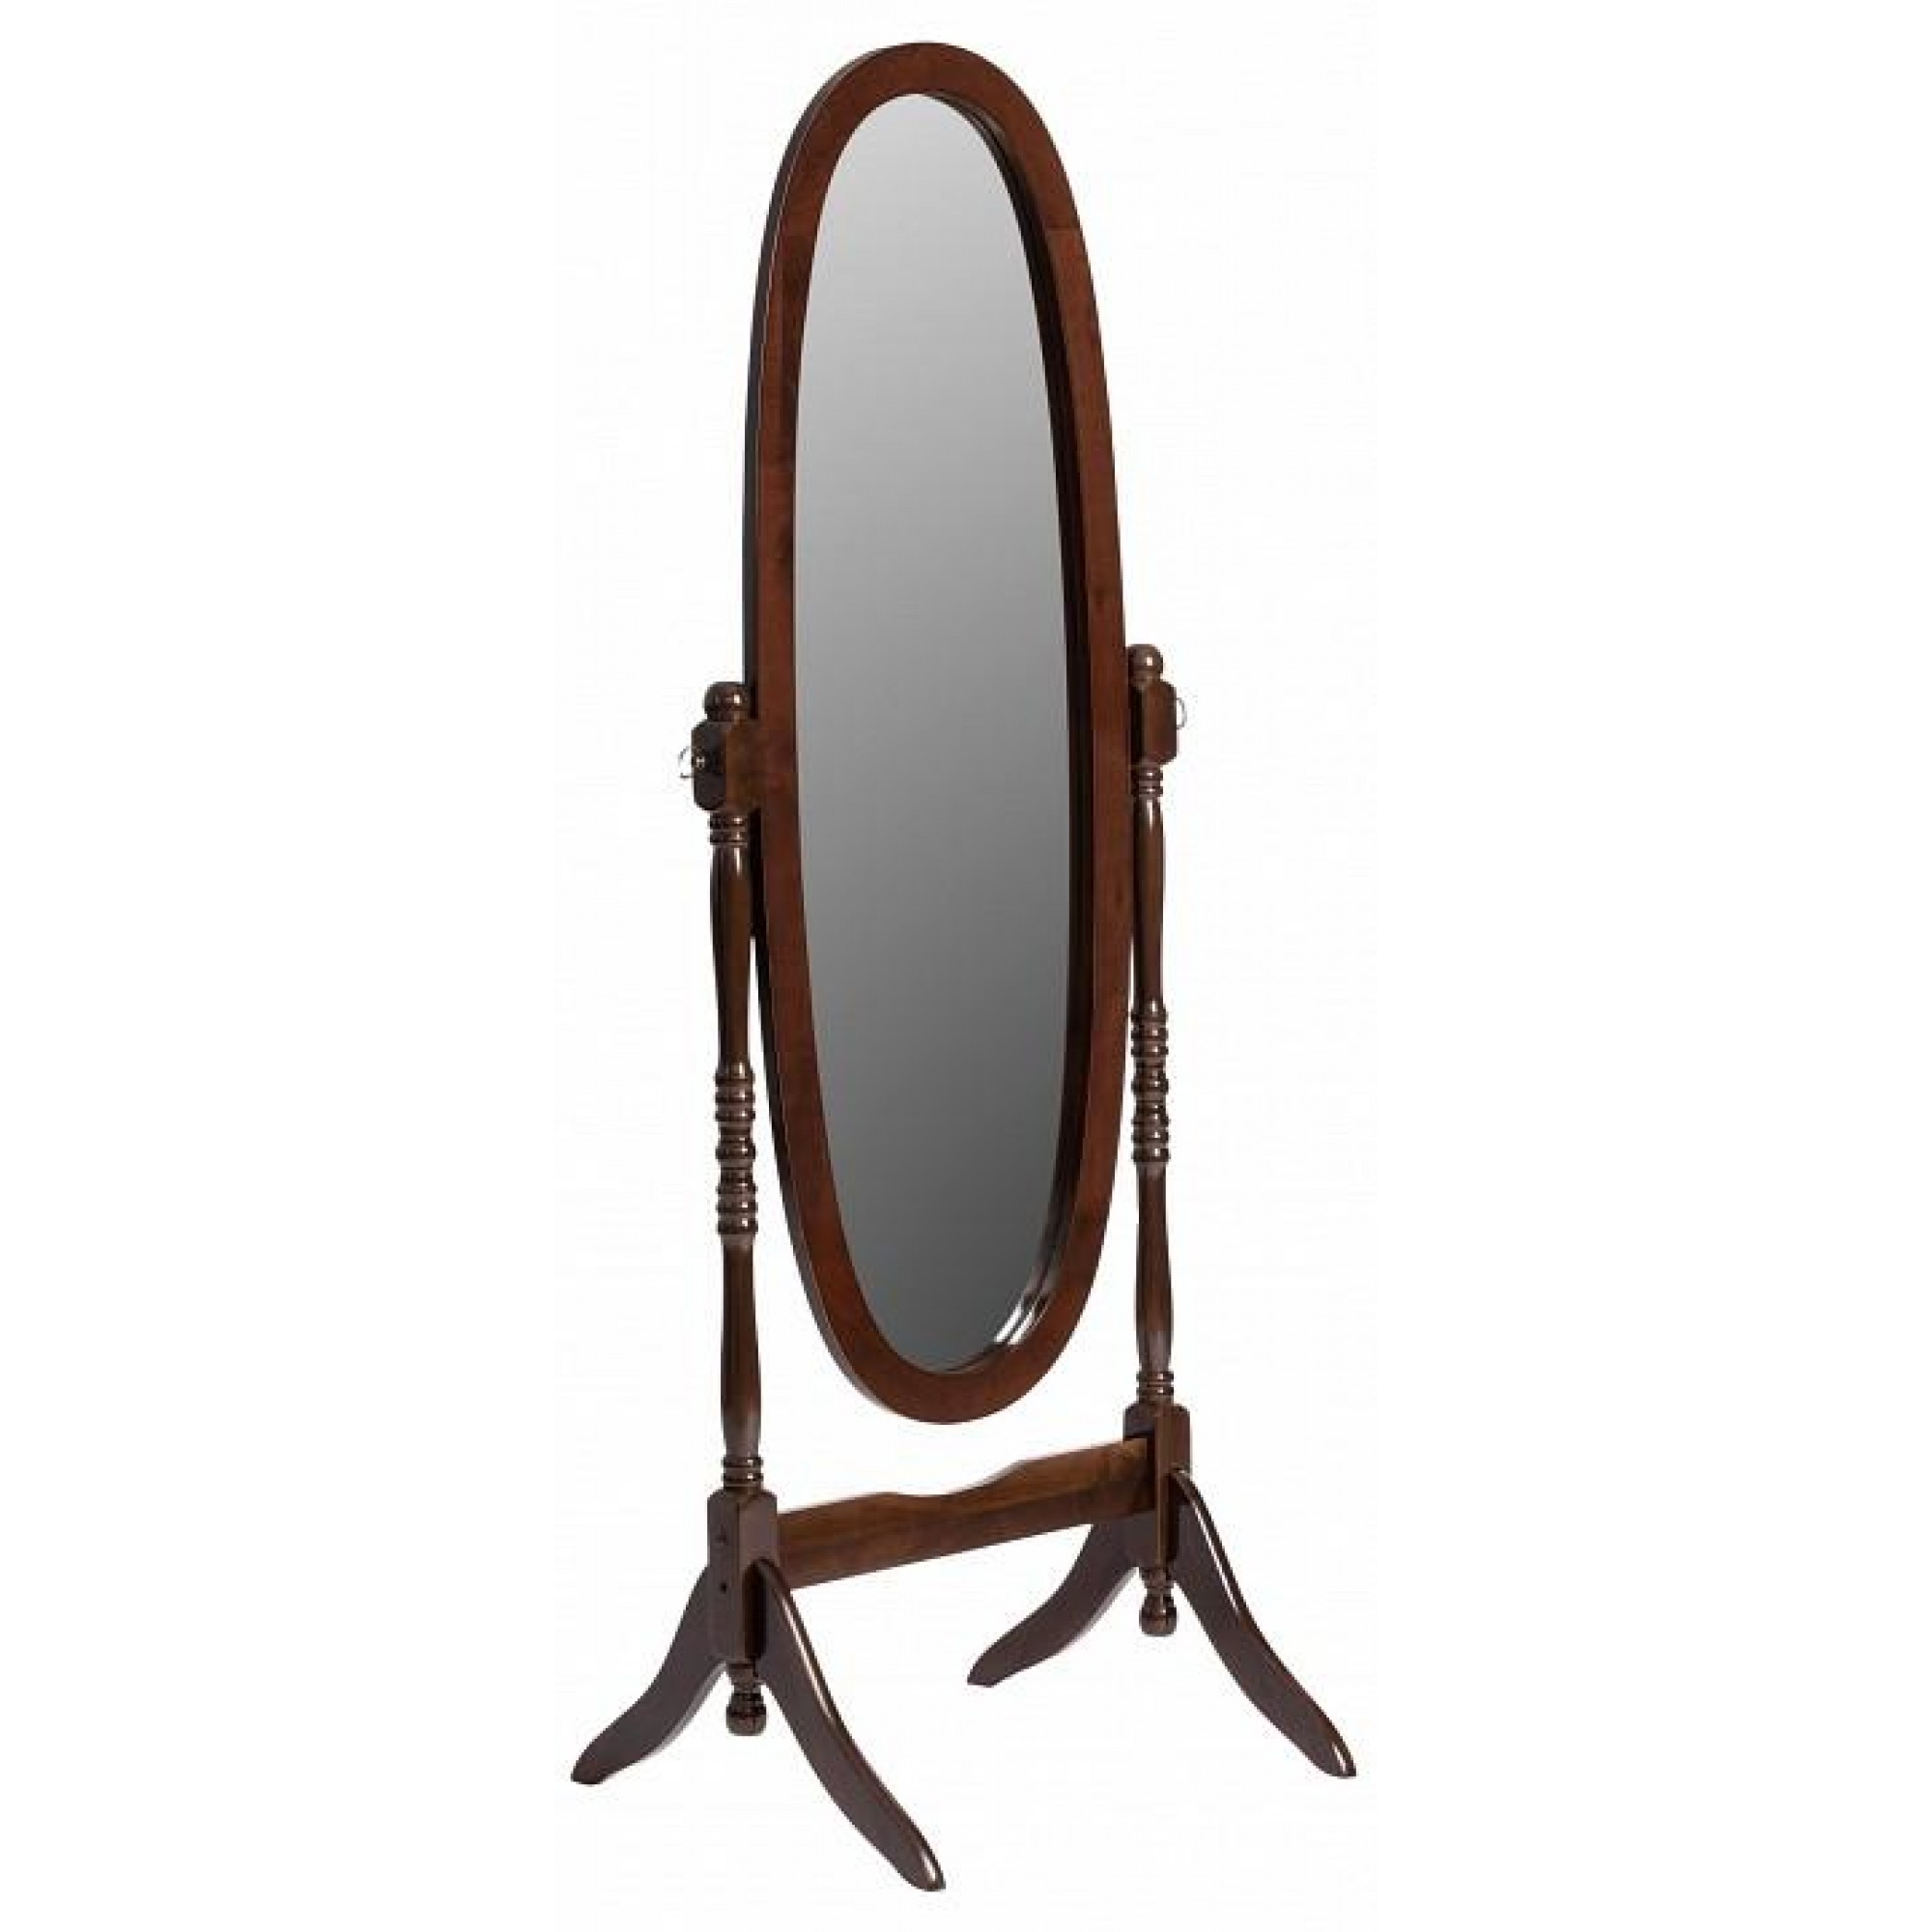 Зеркало напольное NY-4001 древесина коричневая нейтральная орех 560x500x1500(TET_15075)